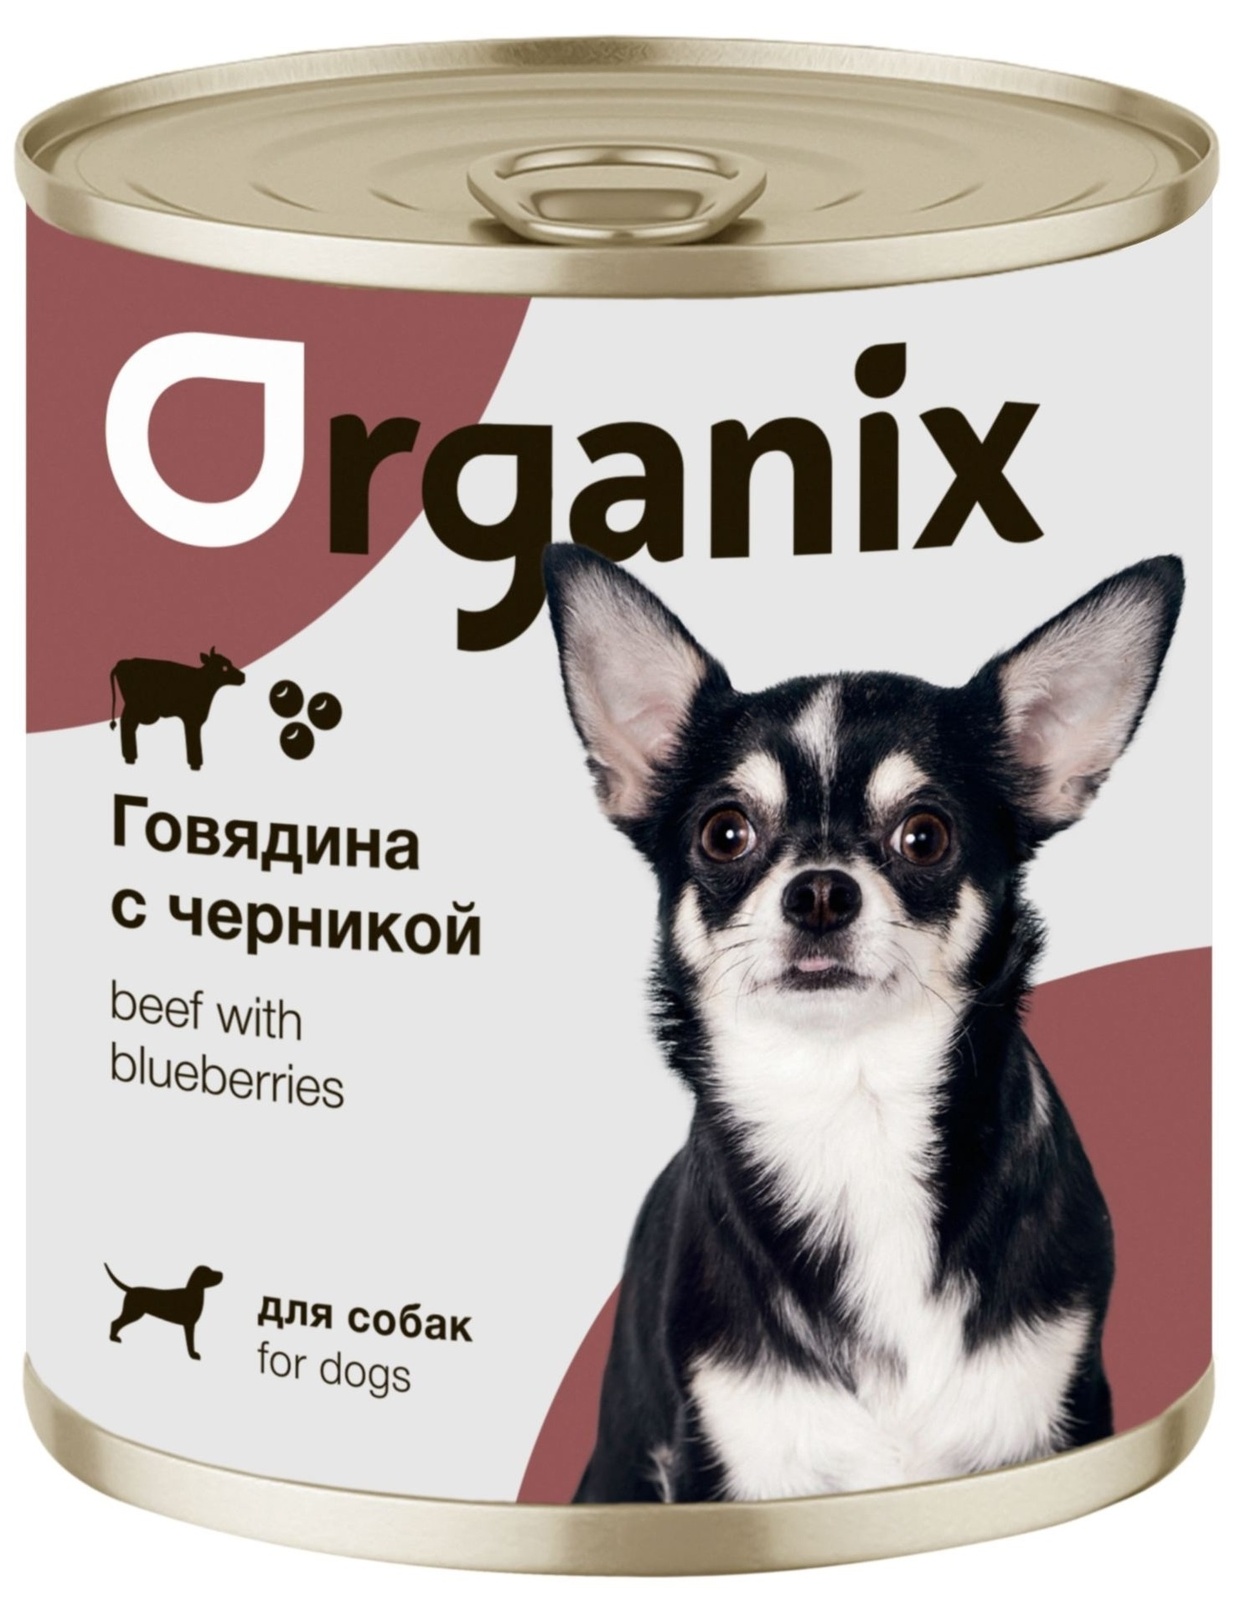 Organix консервы Organix консервы для собак Заливное из говядины с черникой (750 г) organix консервы organix консервы для собак телятина с зеленой фасолью 750 г